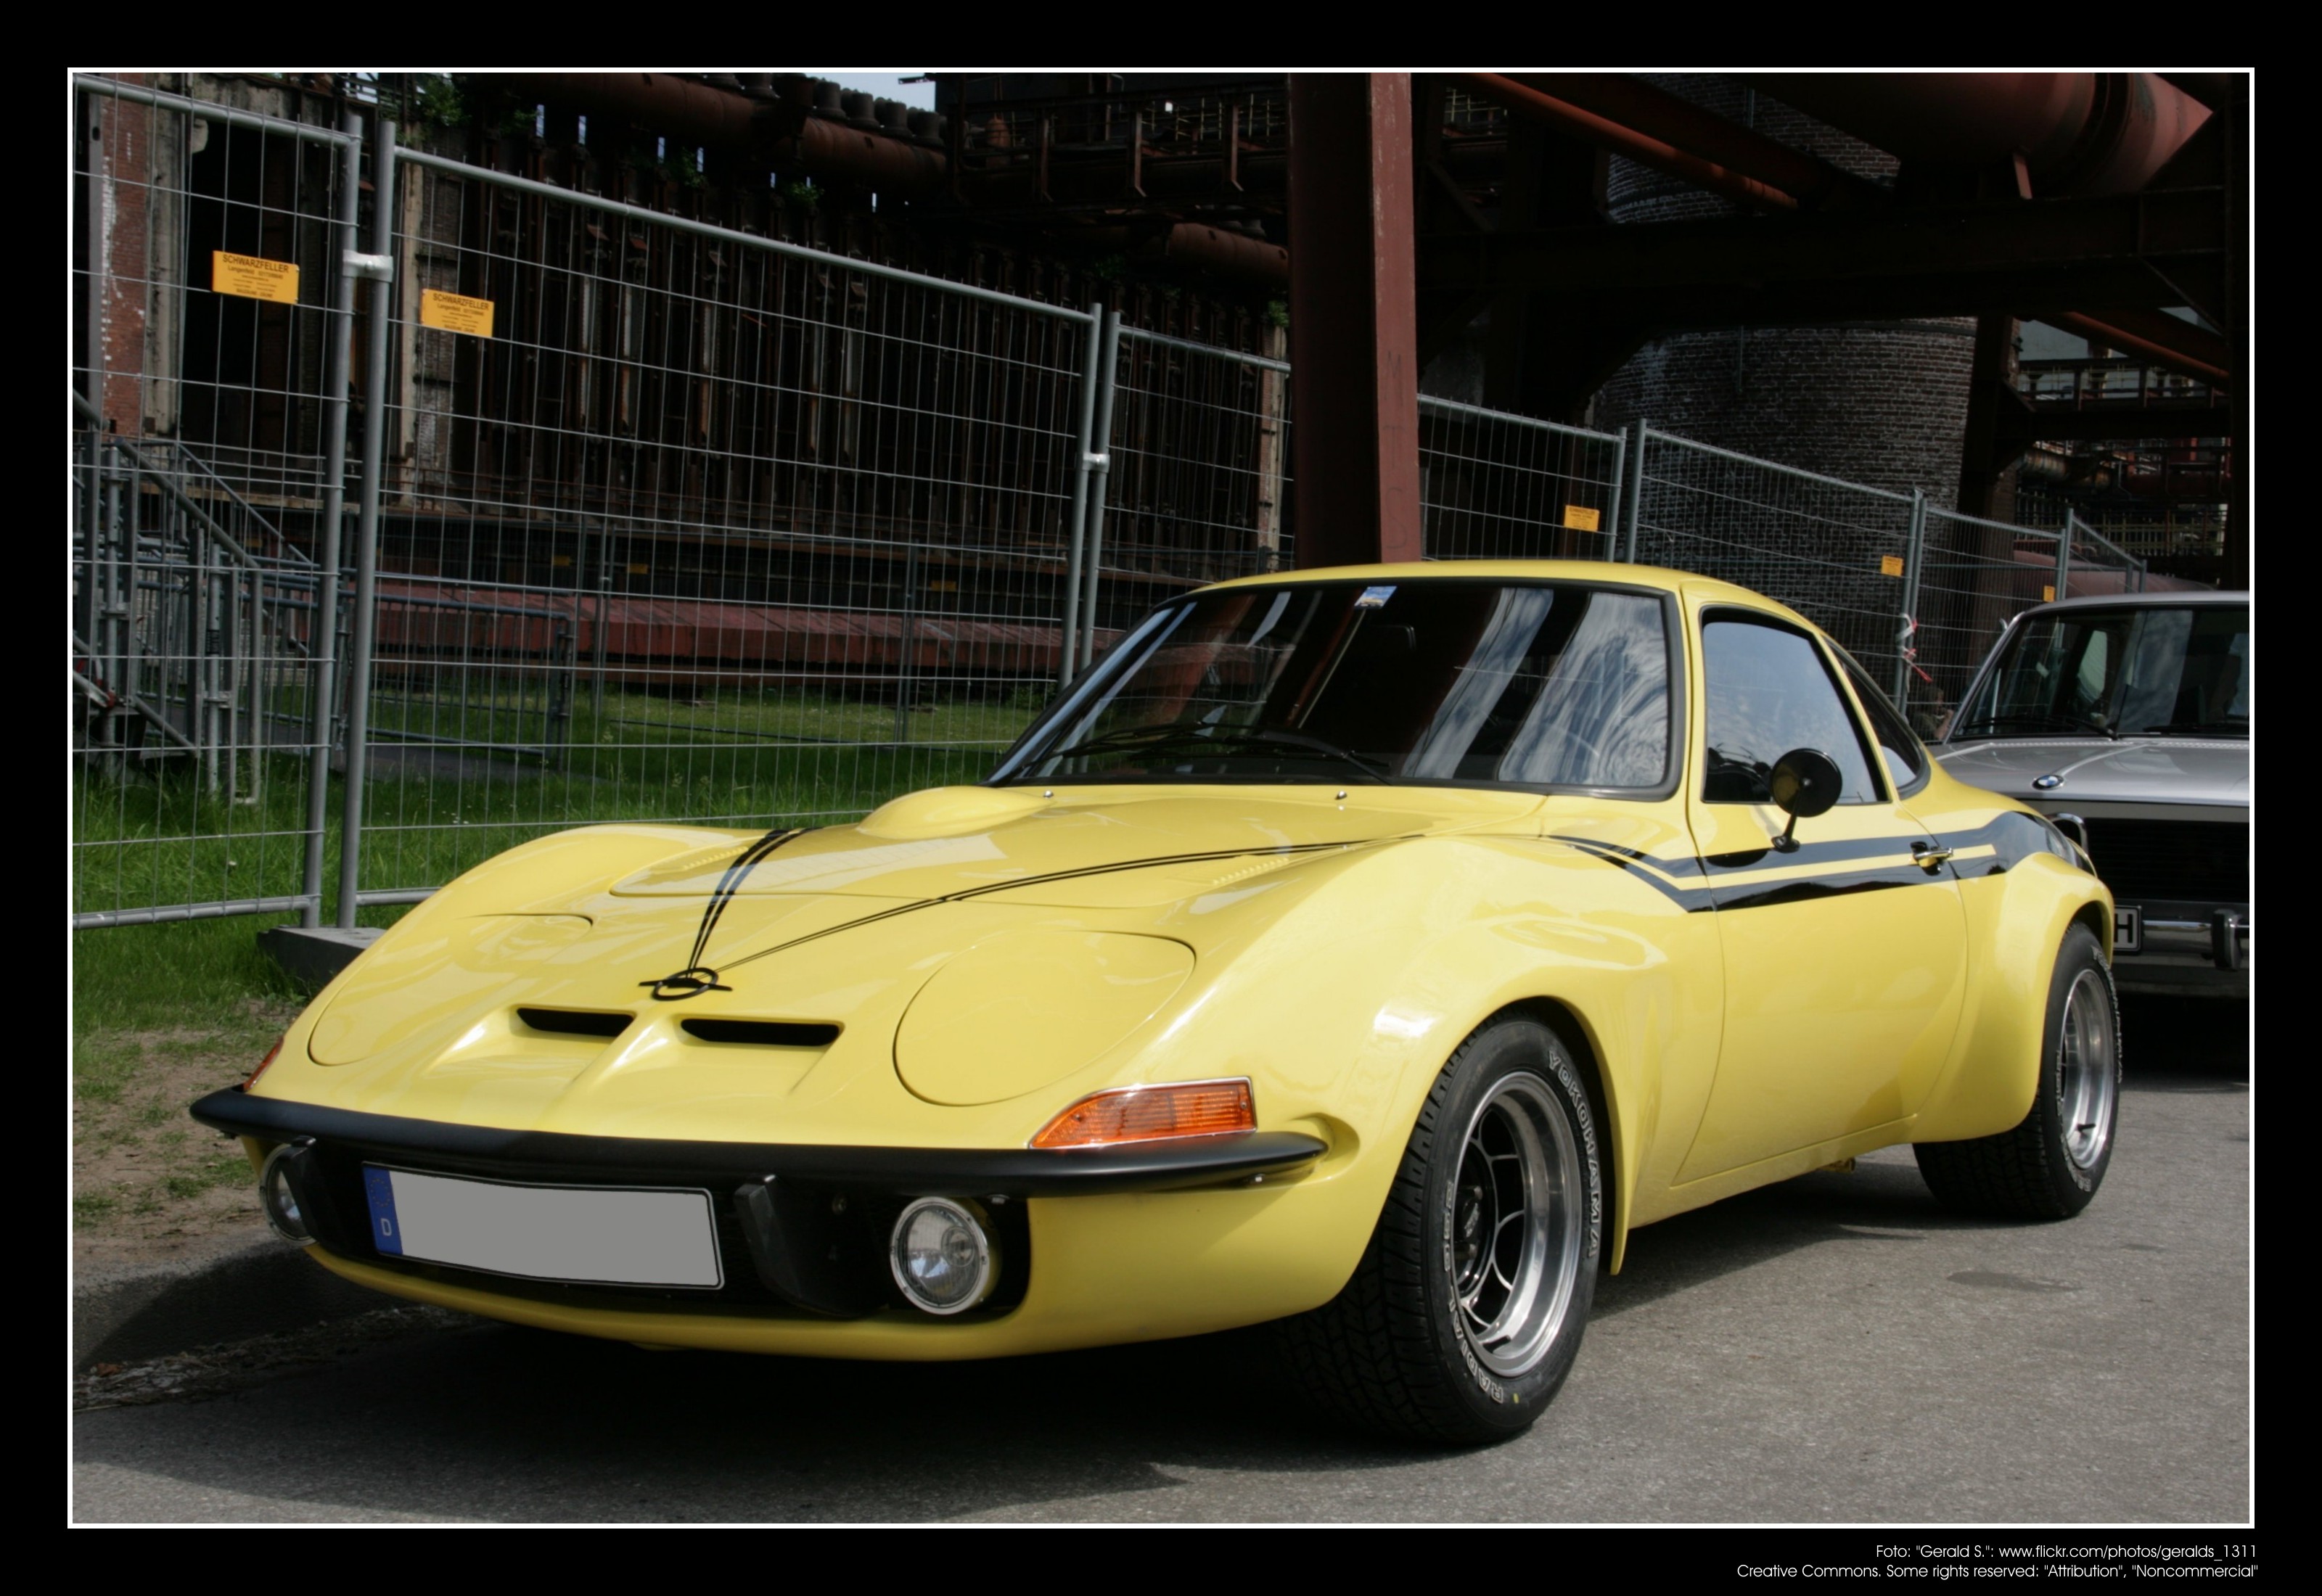 1970 Opel GT (05) | Flickr - Photo Sharing!